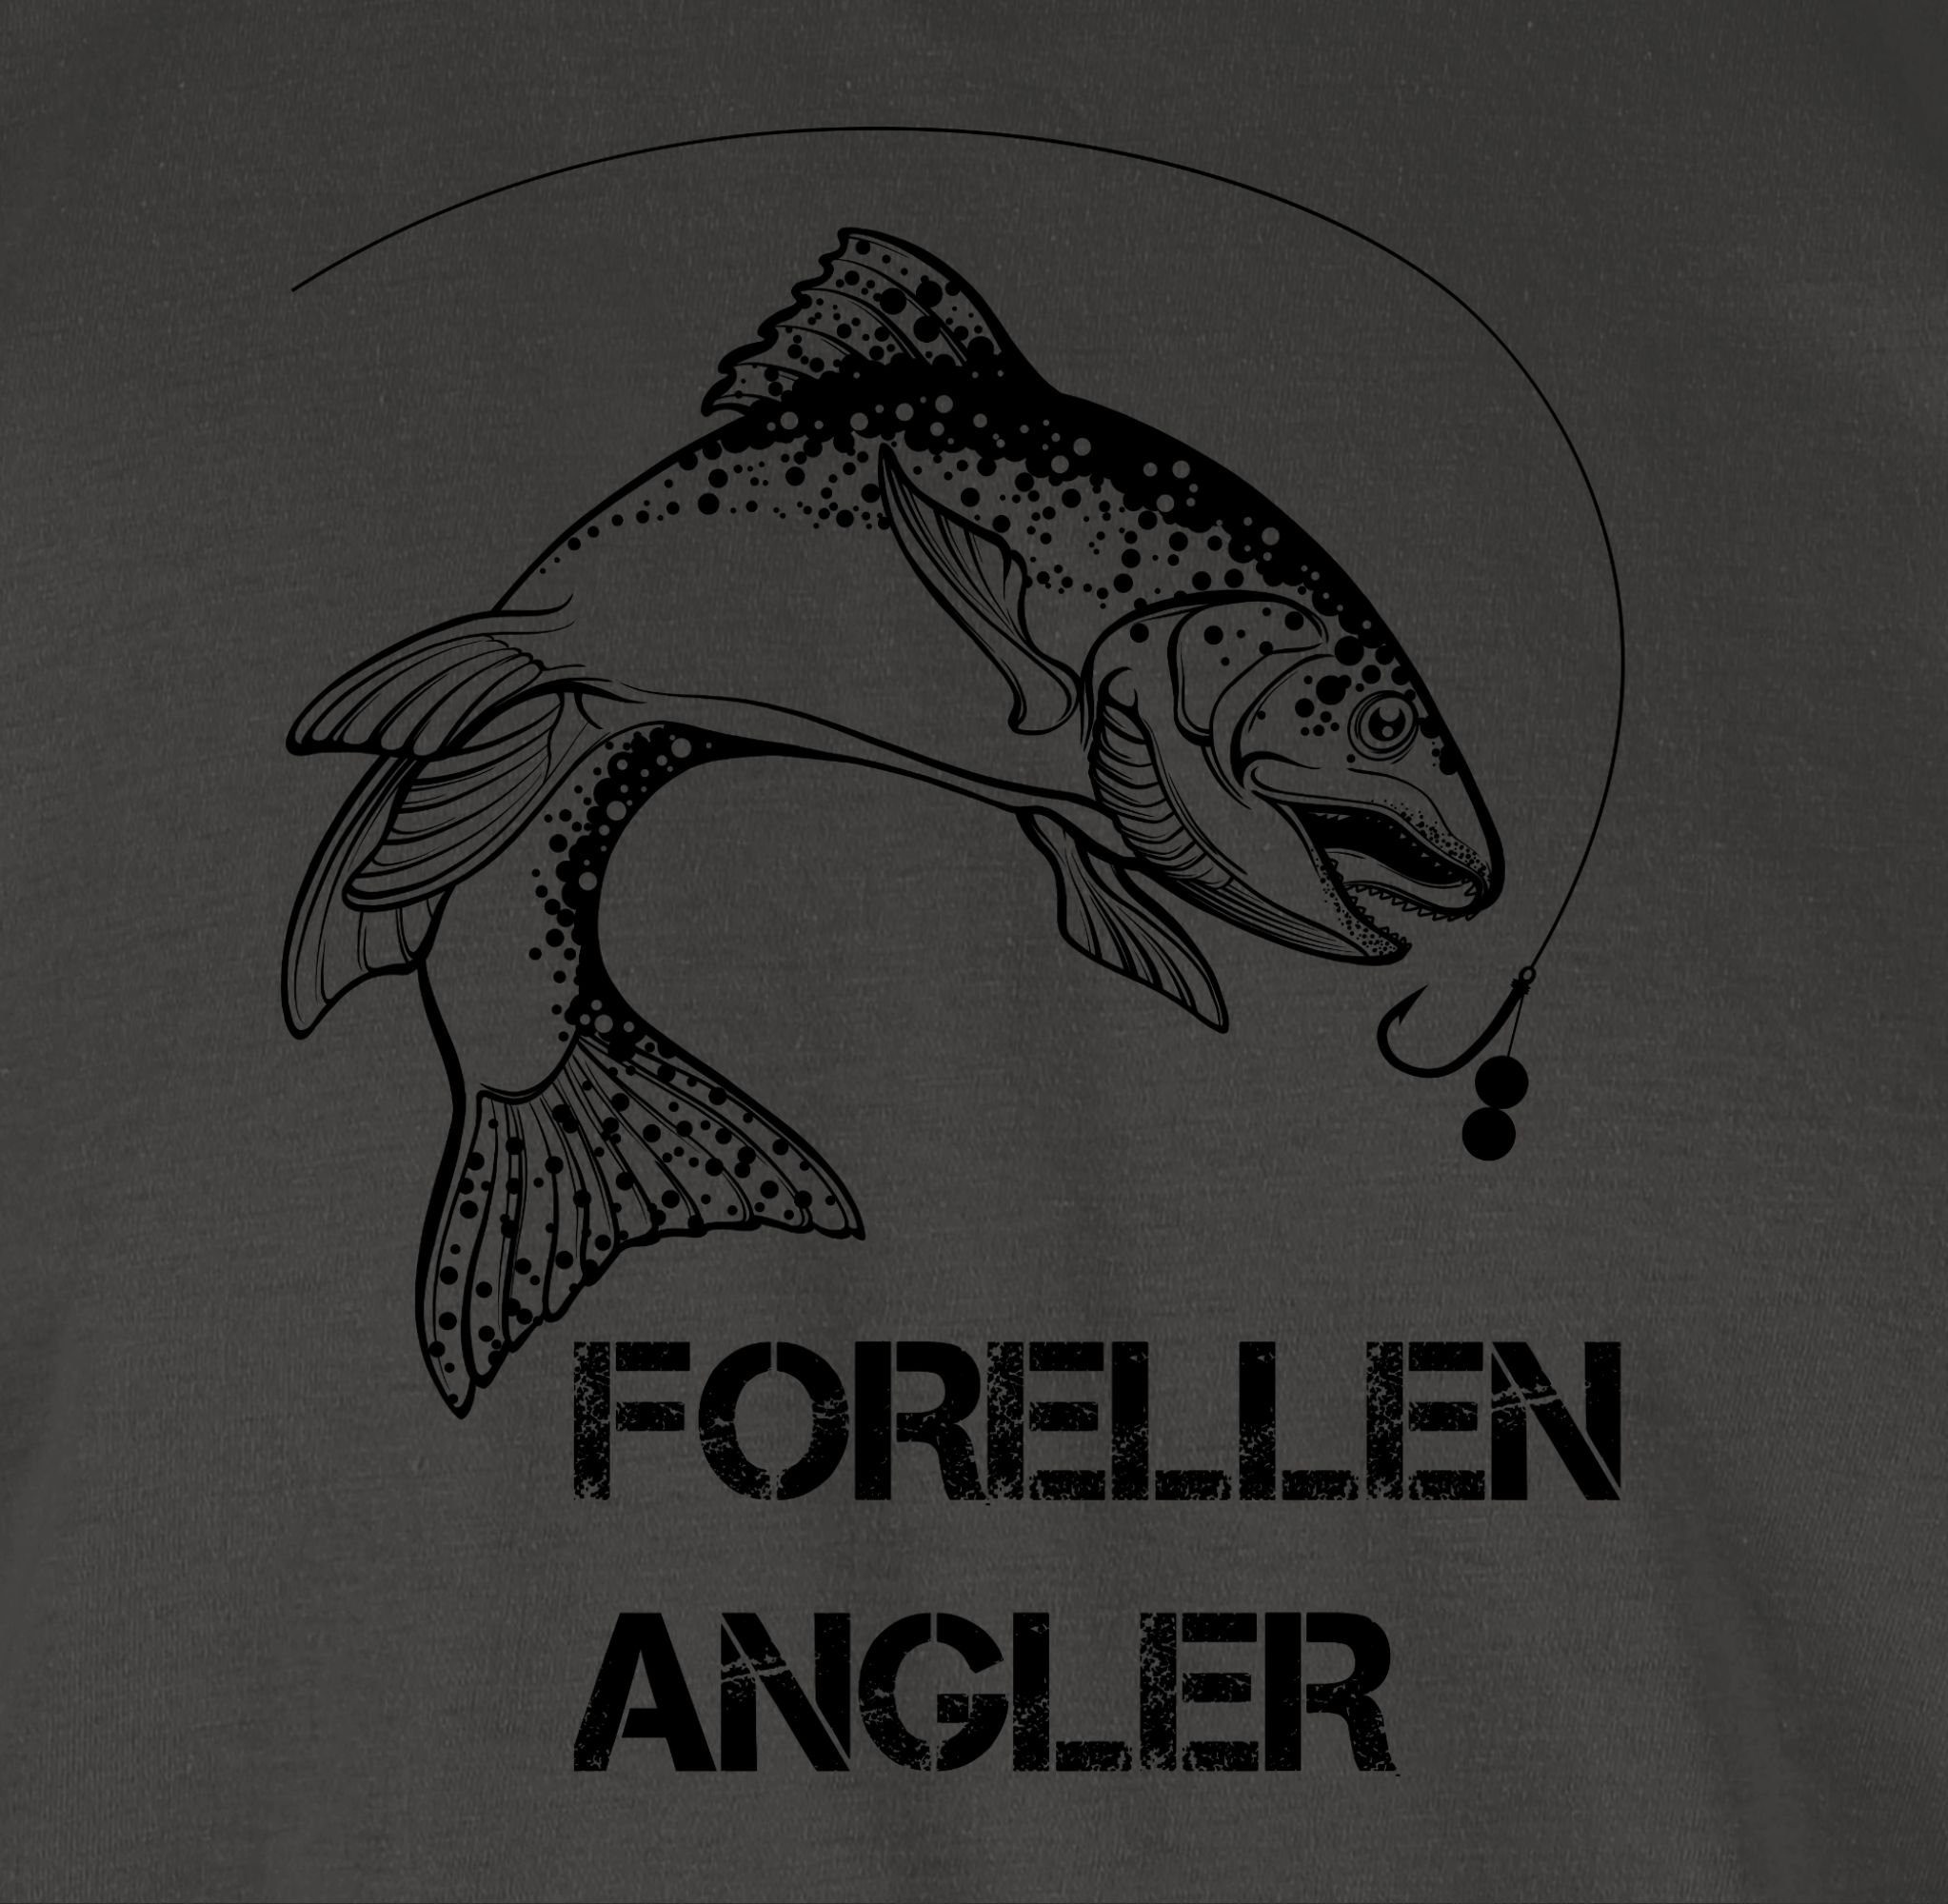 schwarz Forellenangler 2 Dunkelgrau Angler Geschenke T-Shirt - Shirtracer